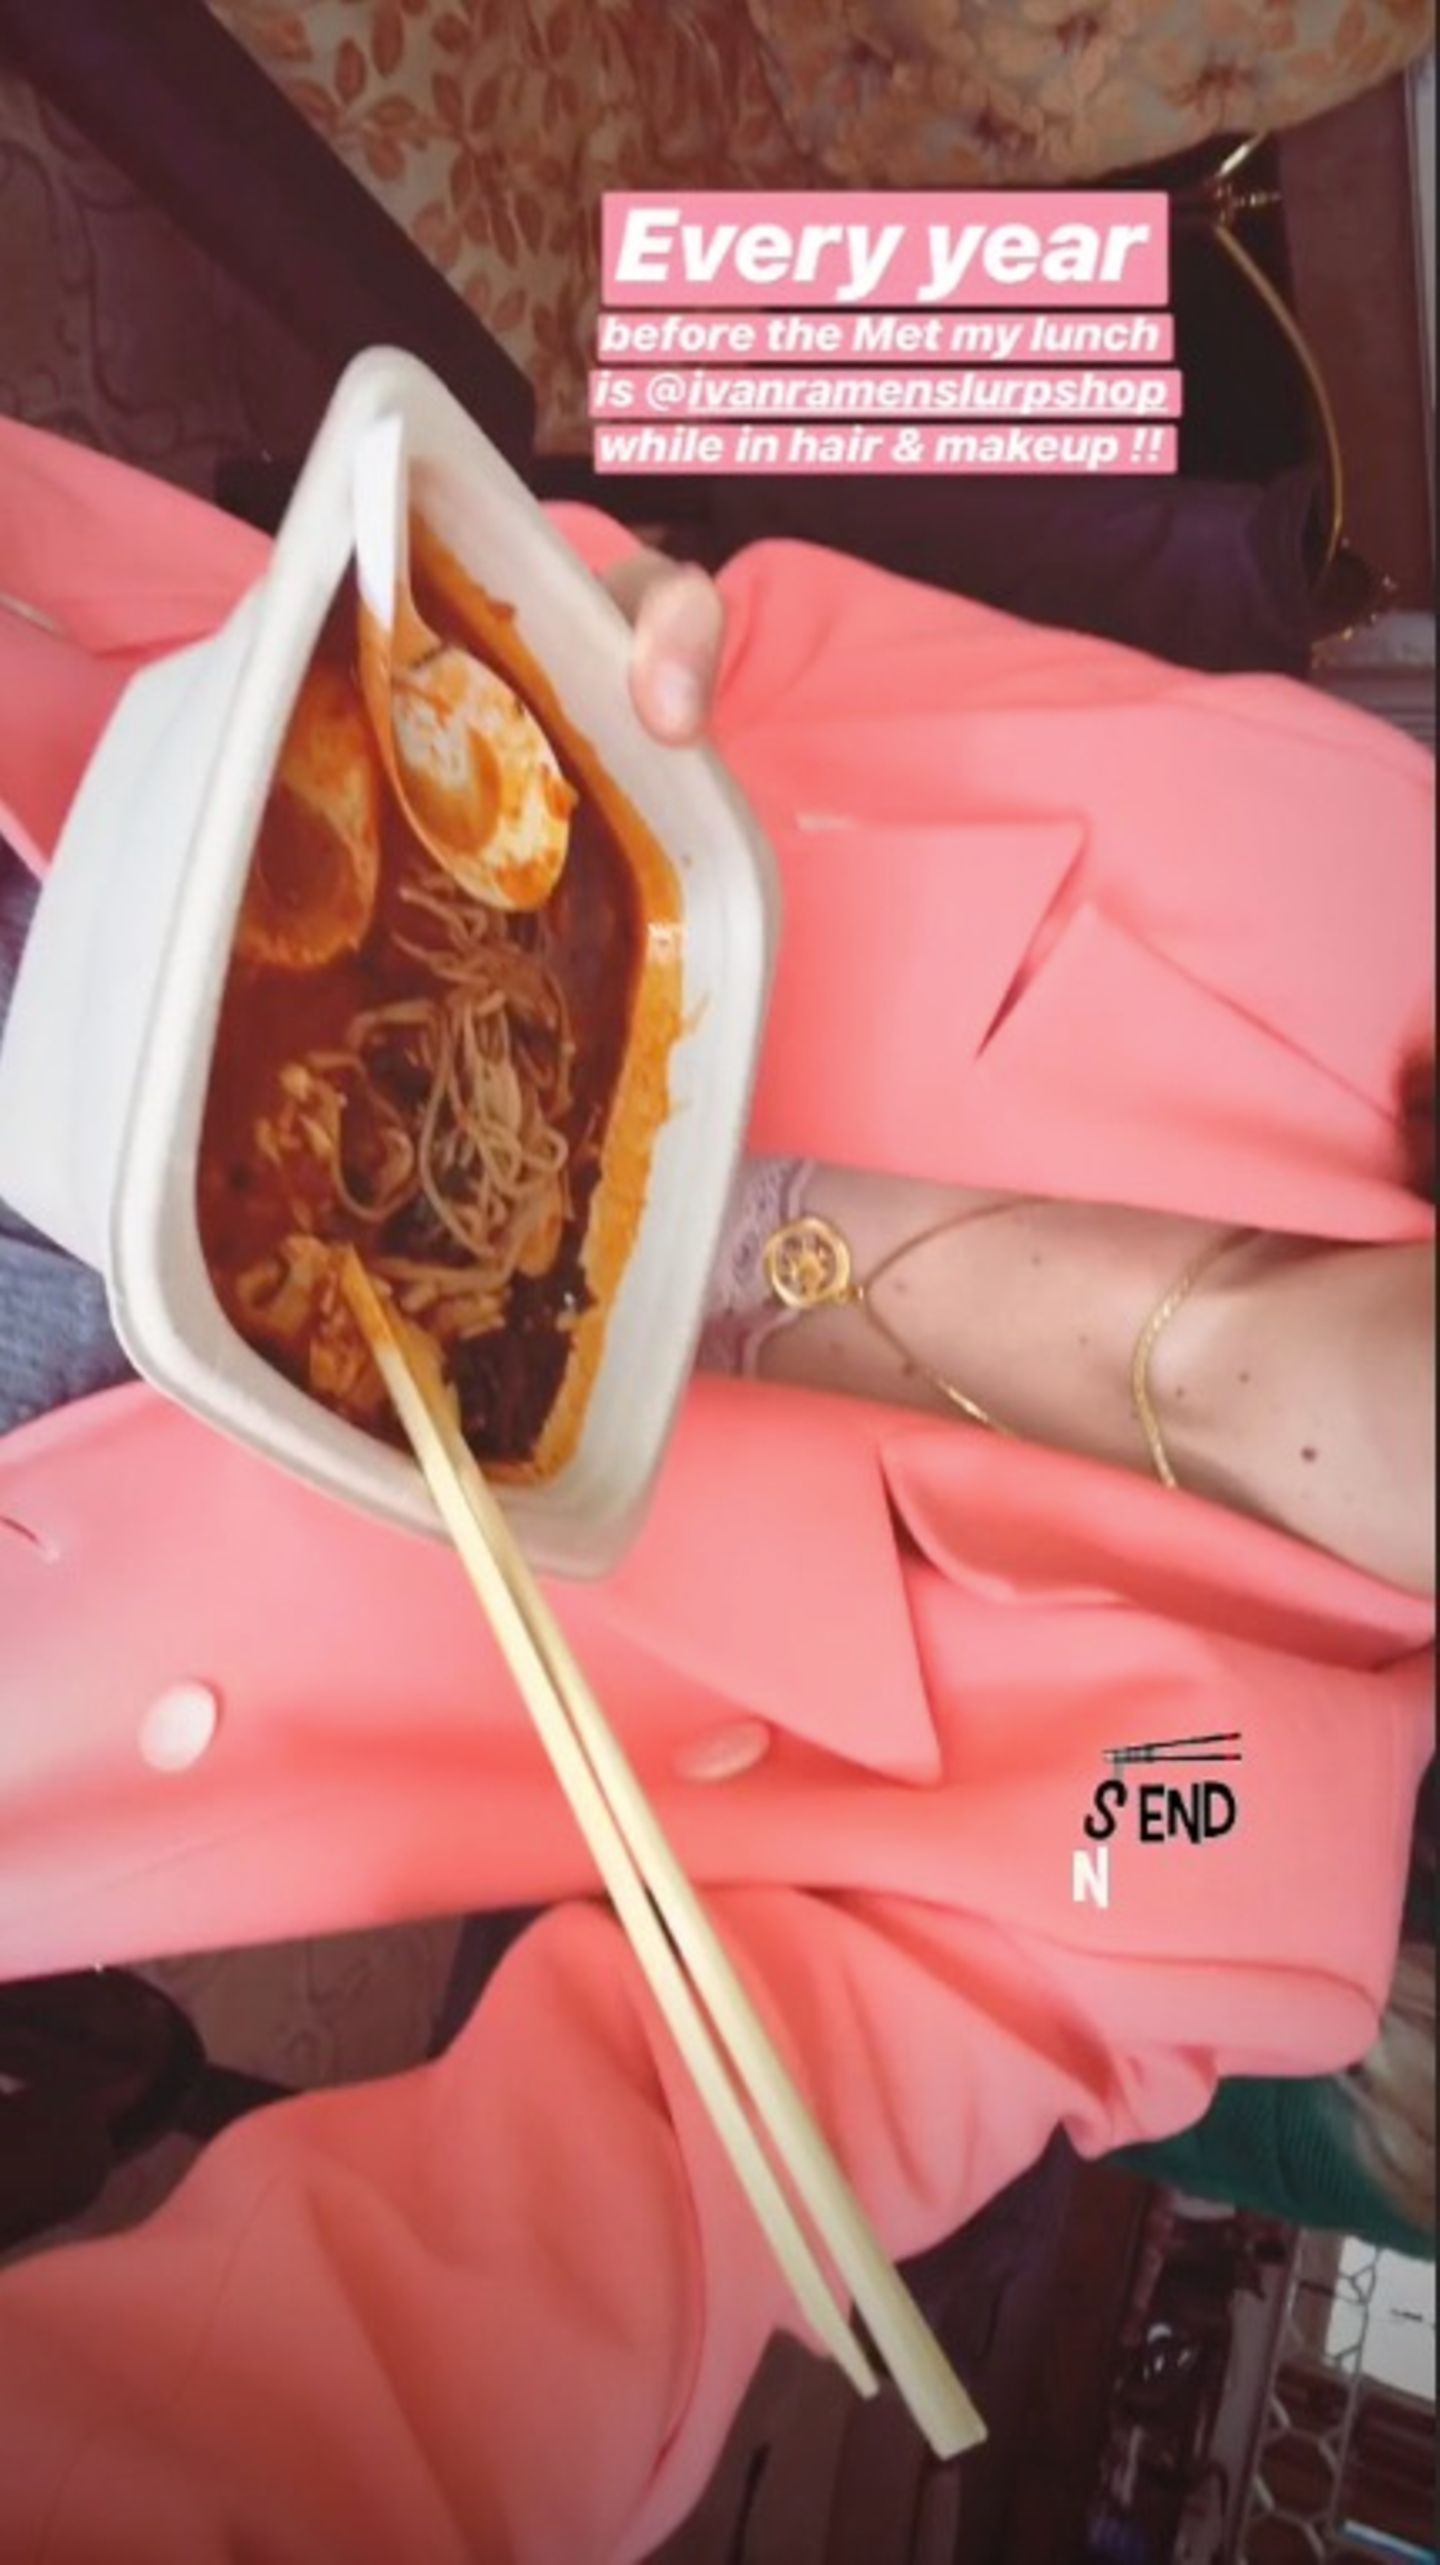 Auf Instagram zeigt Gigi Hadid ihren Fans ihr traditionelles Mittagessen vor jeder Met Gala.